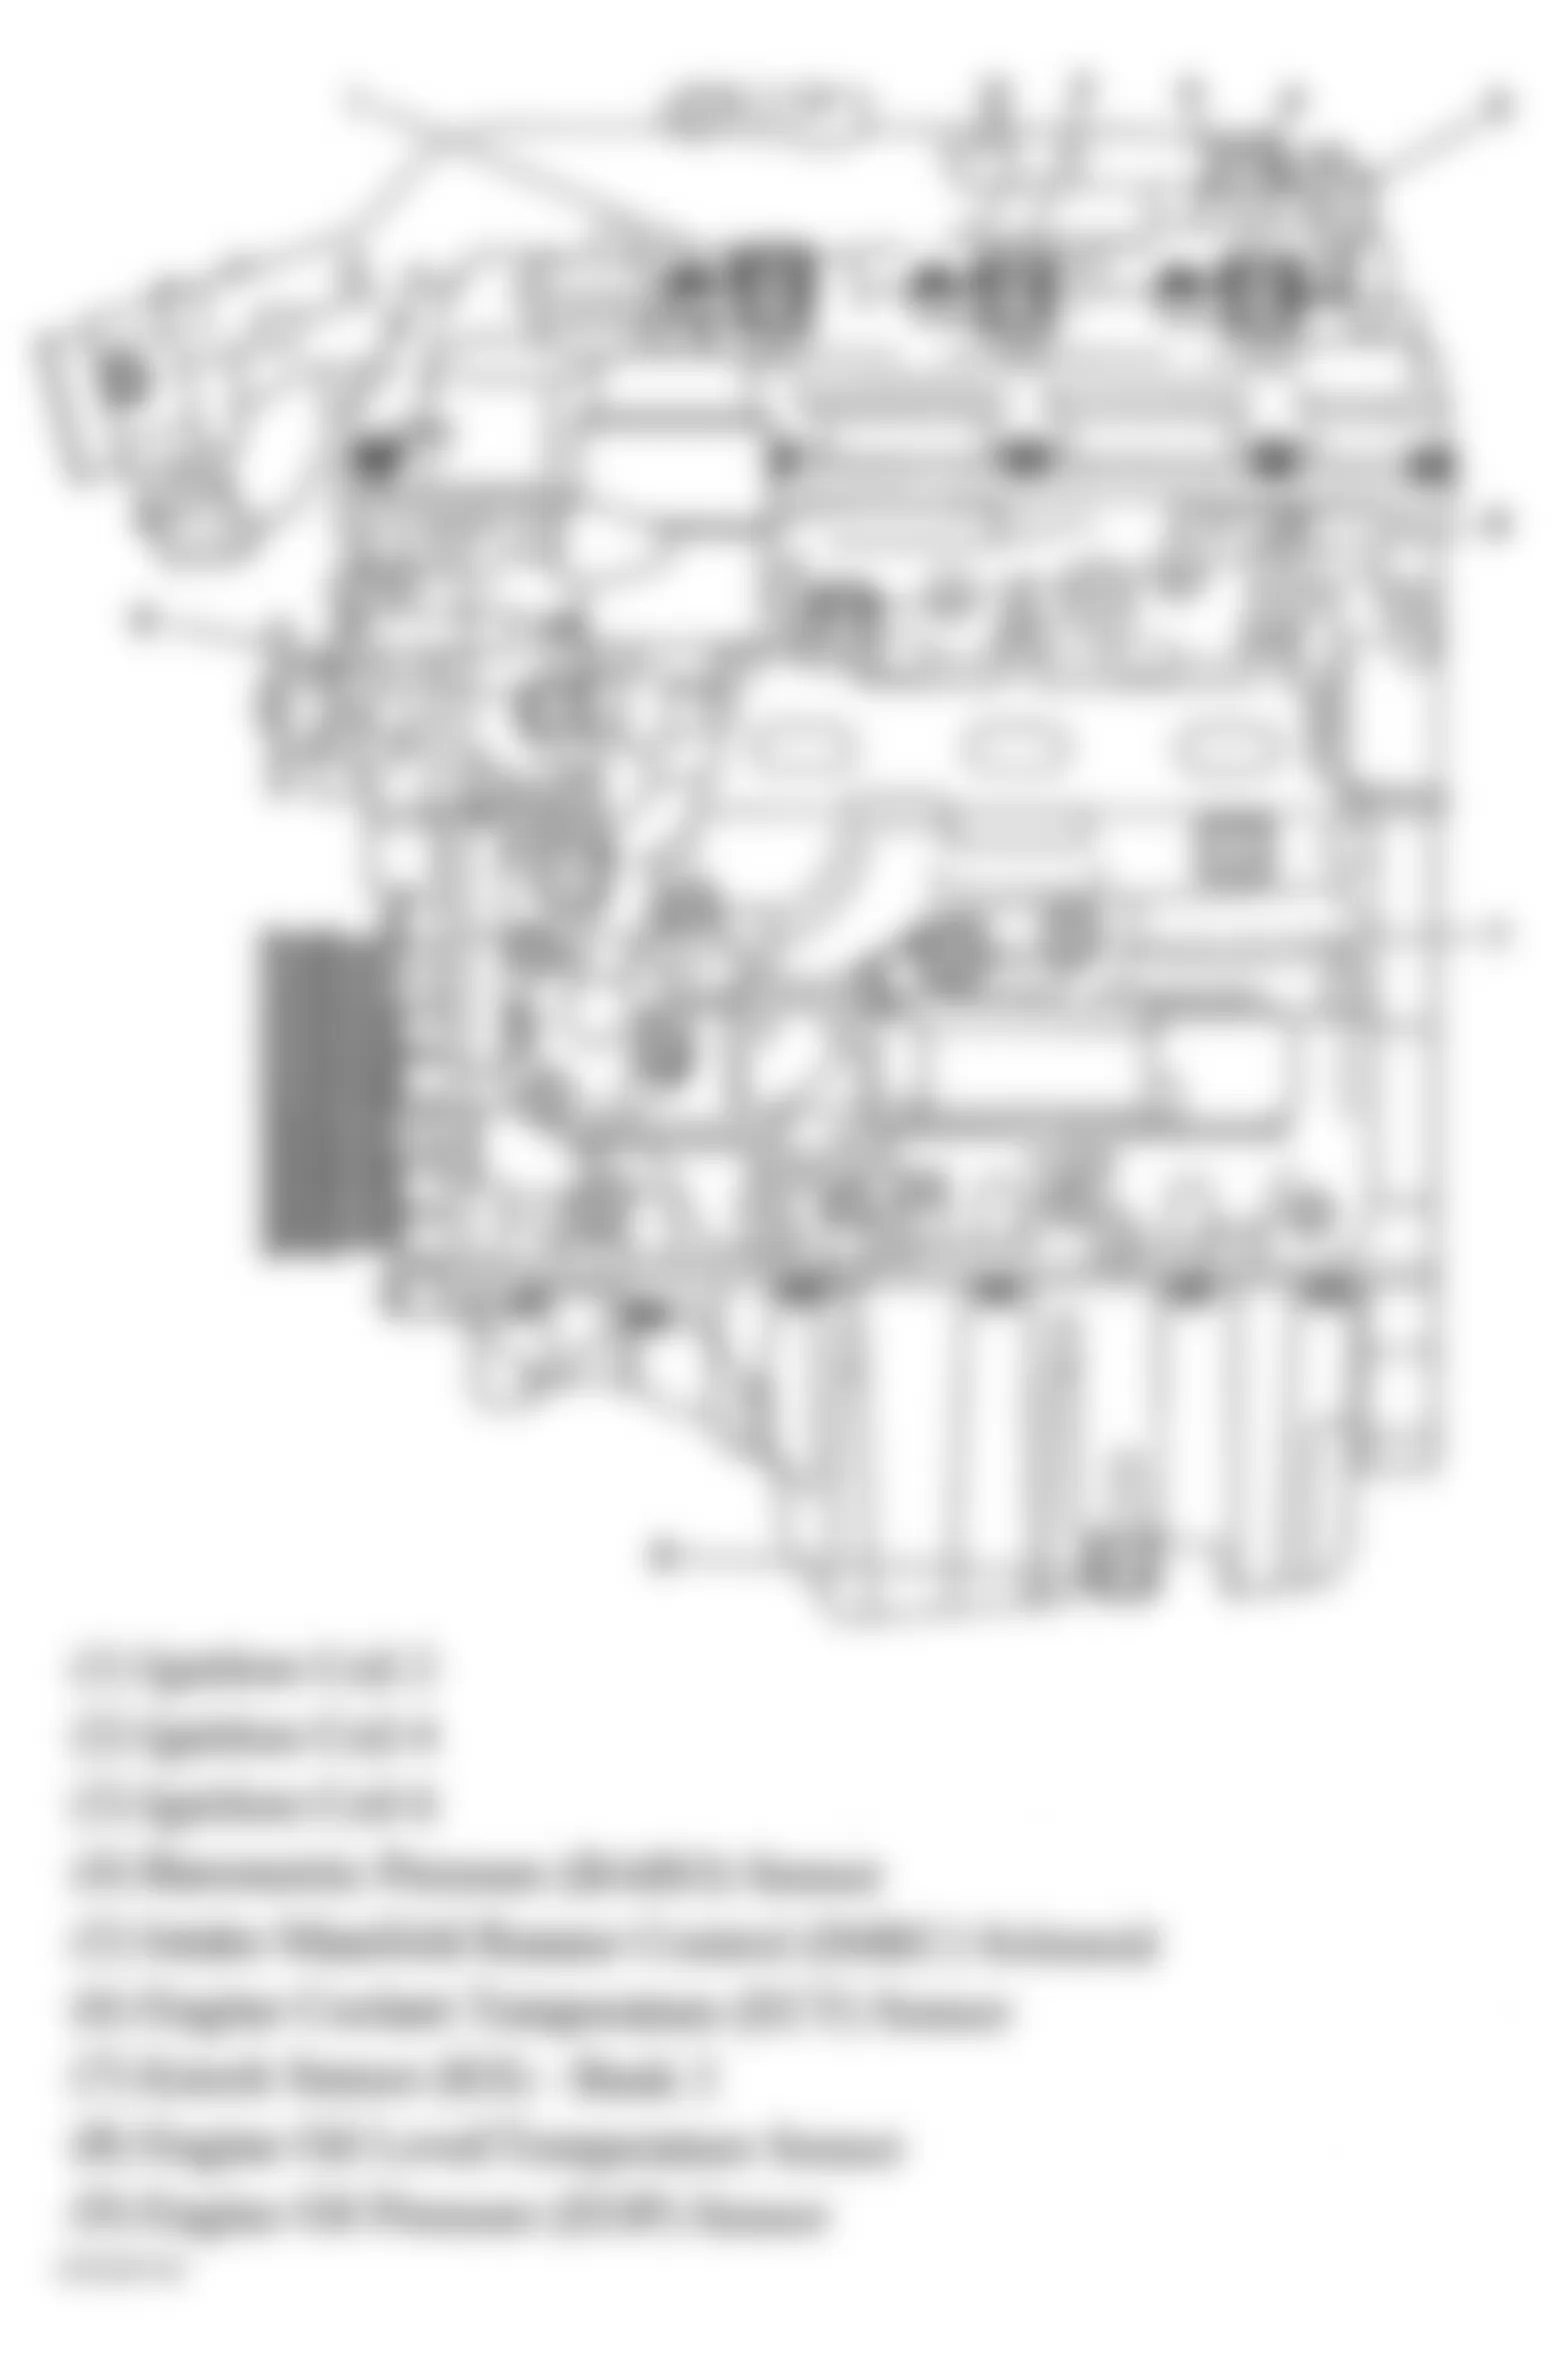 Buick Allure CXL 2005 - Component Locations -  Engine Control Components (3.6L)